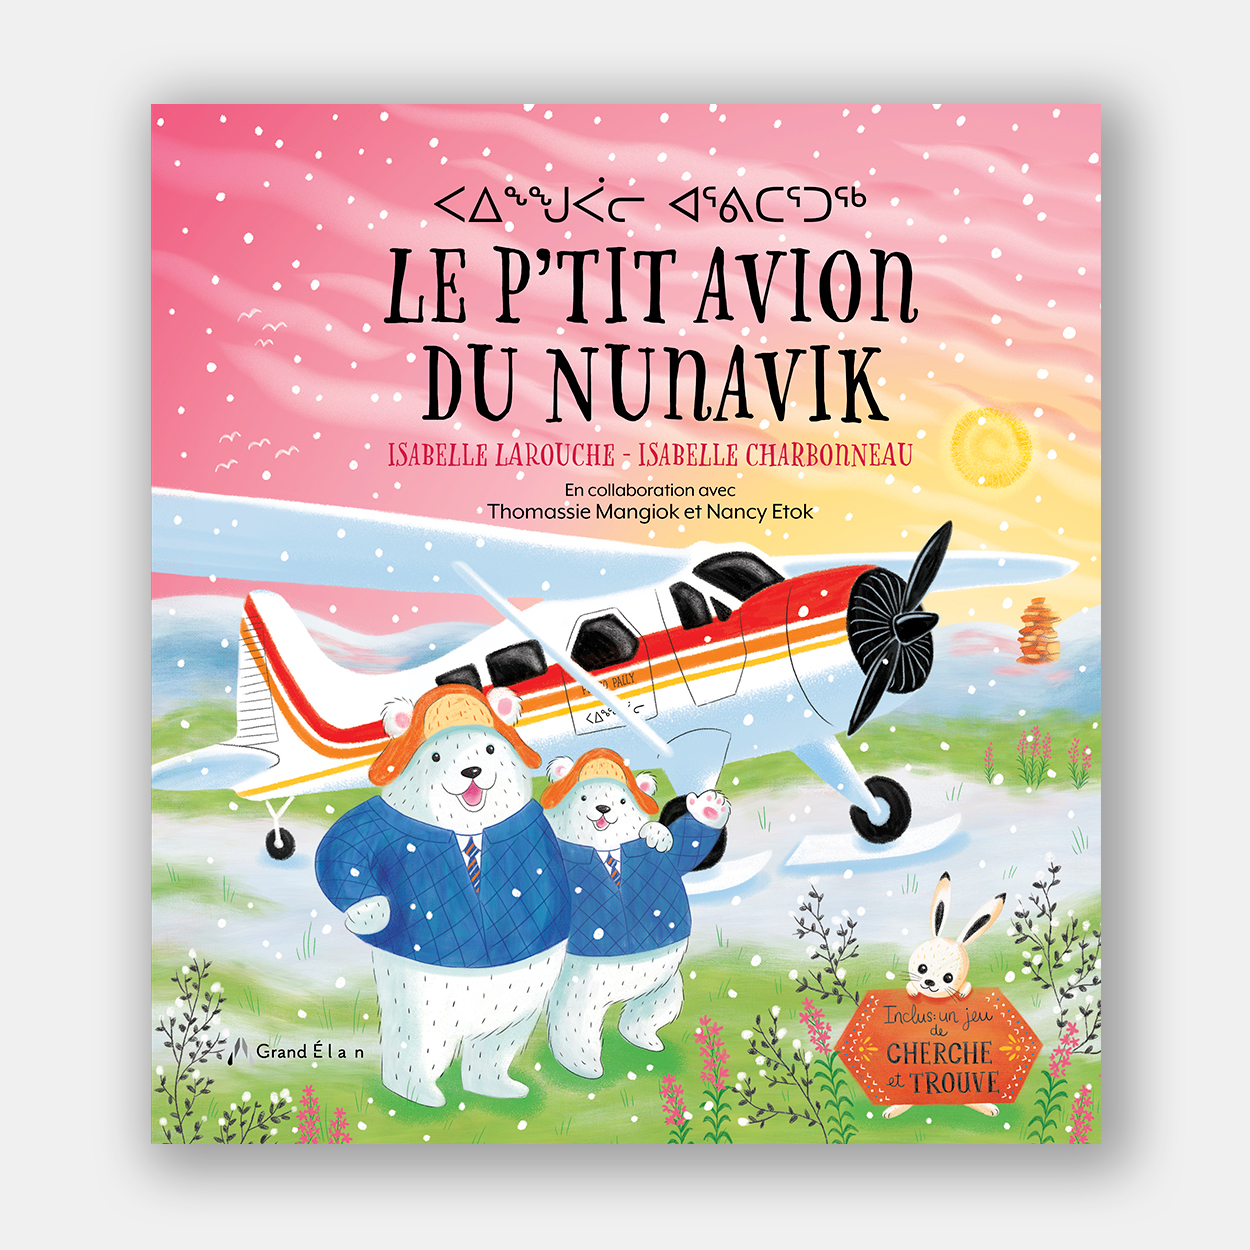 Couverture du livre "Le p'tit avion du Nunavik"